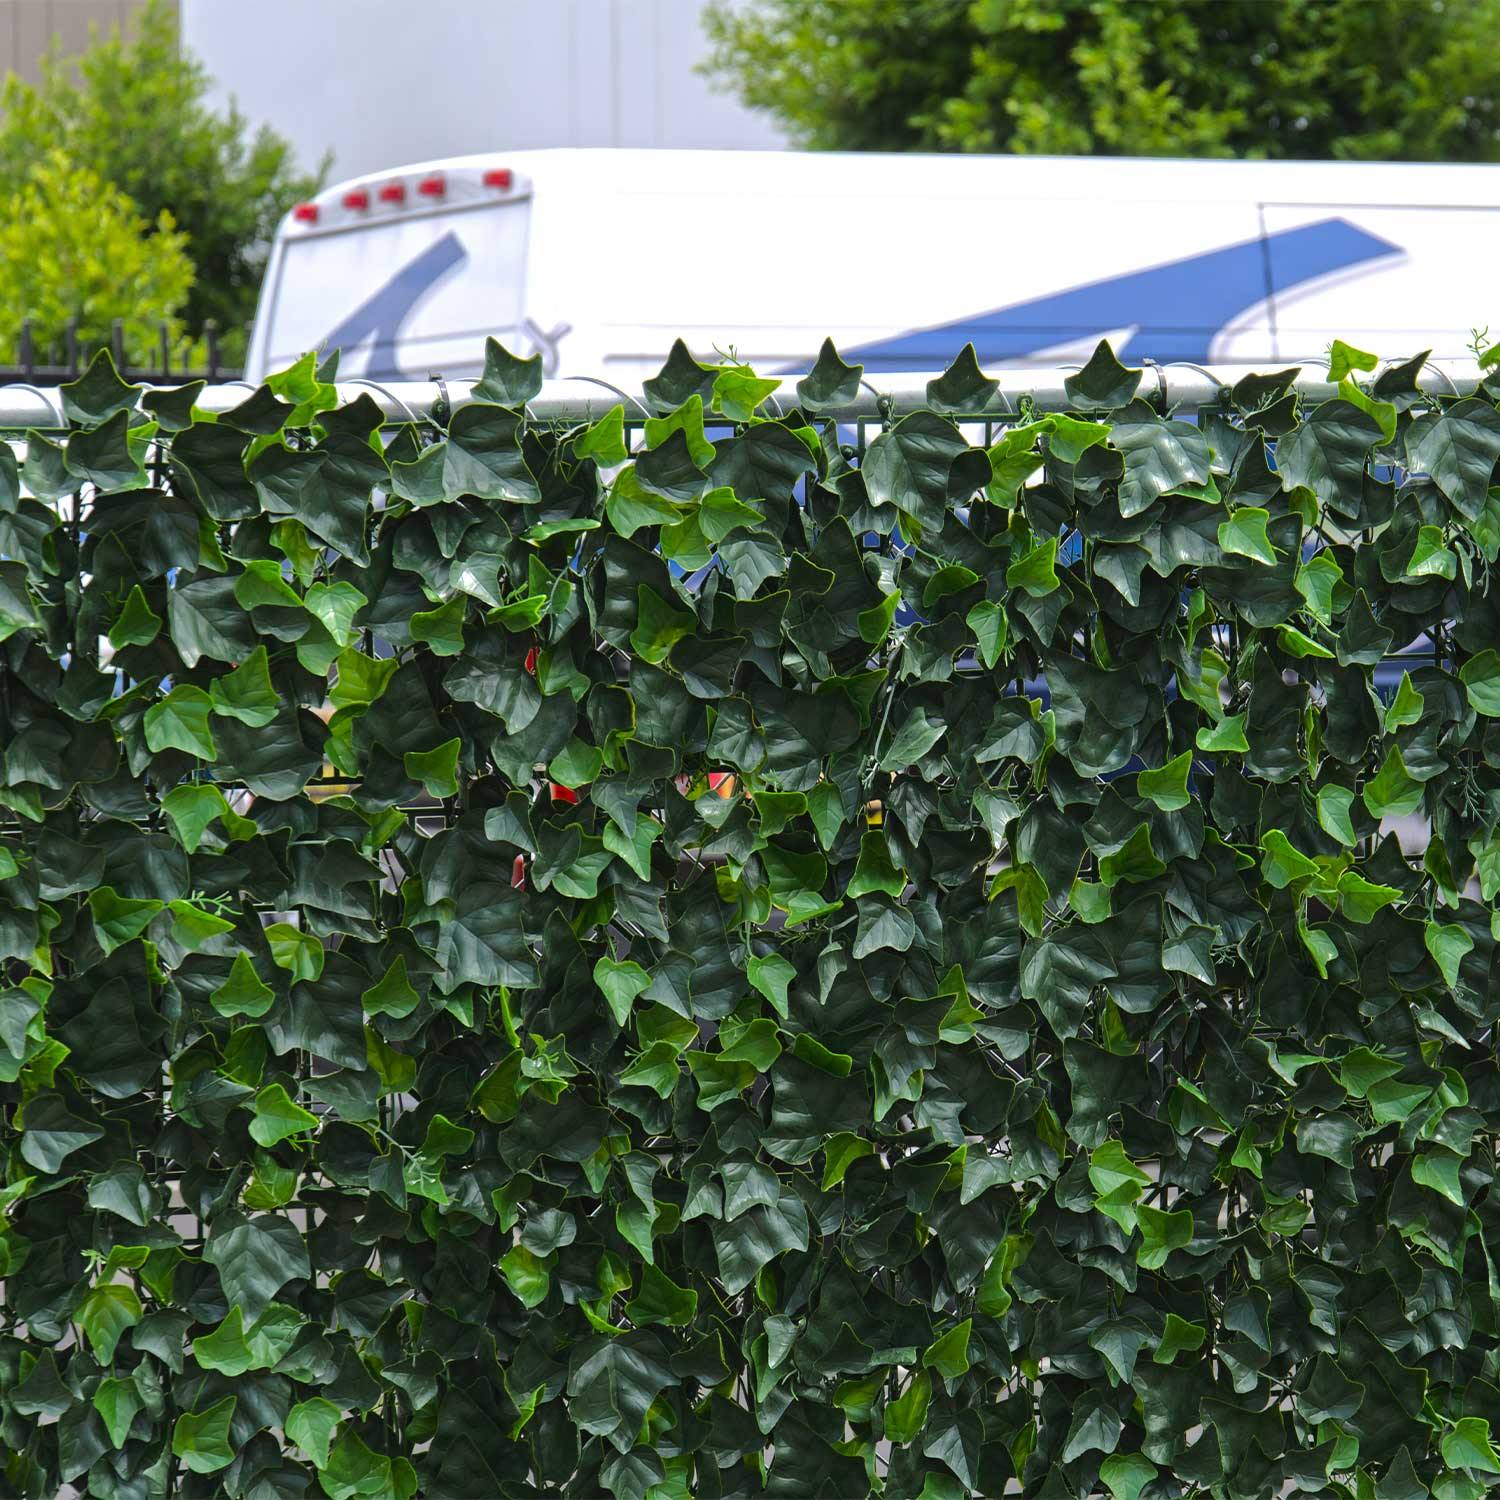 Artificial English Ivy Green Wall Mat - Fake Ivy Wall